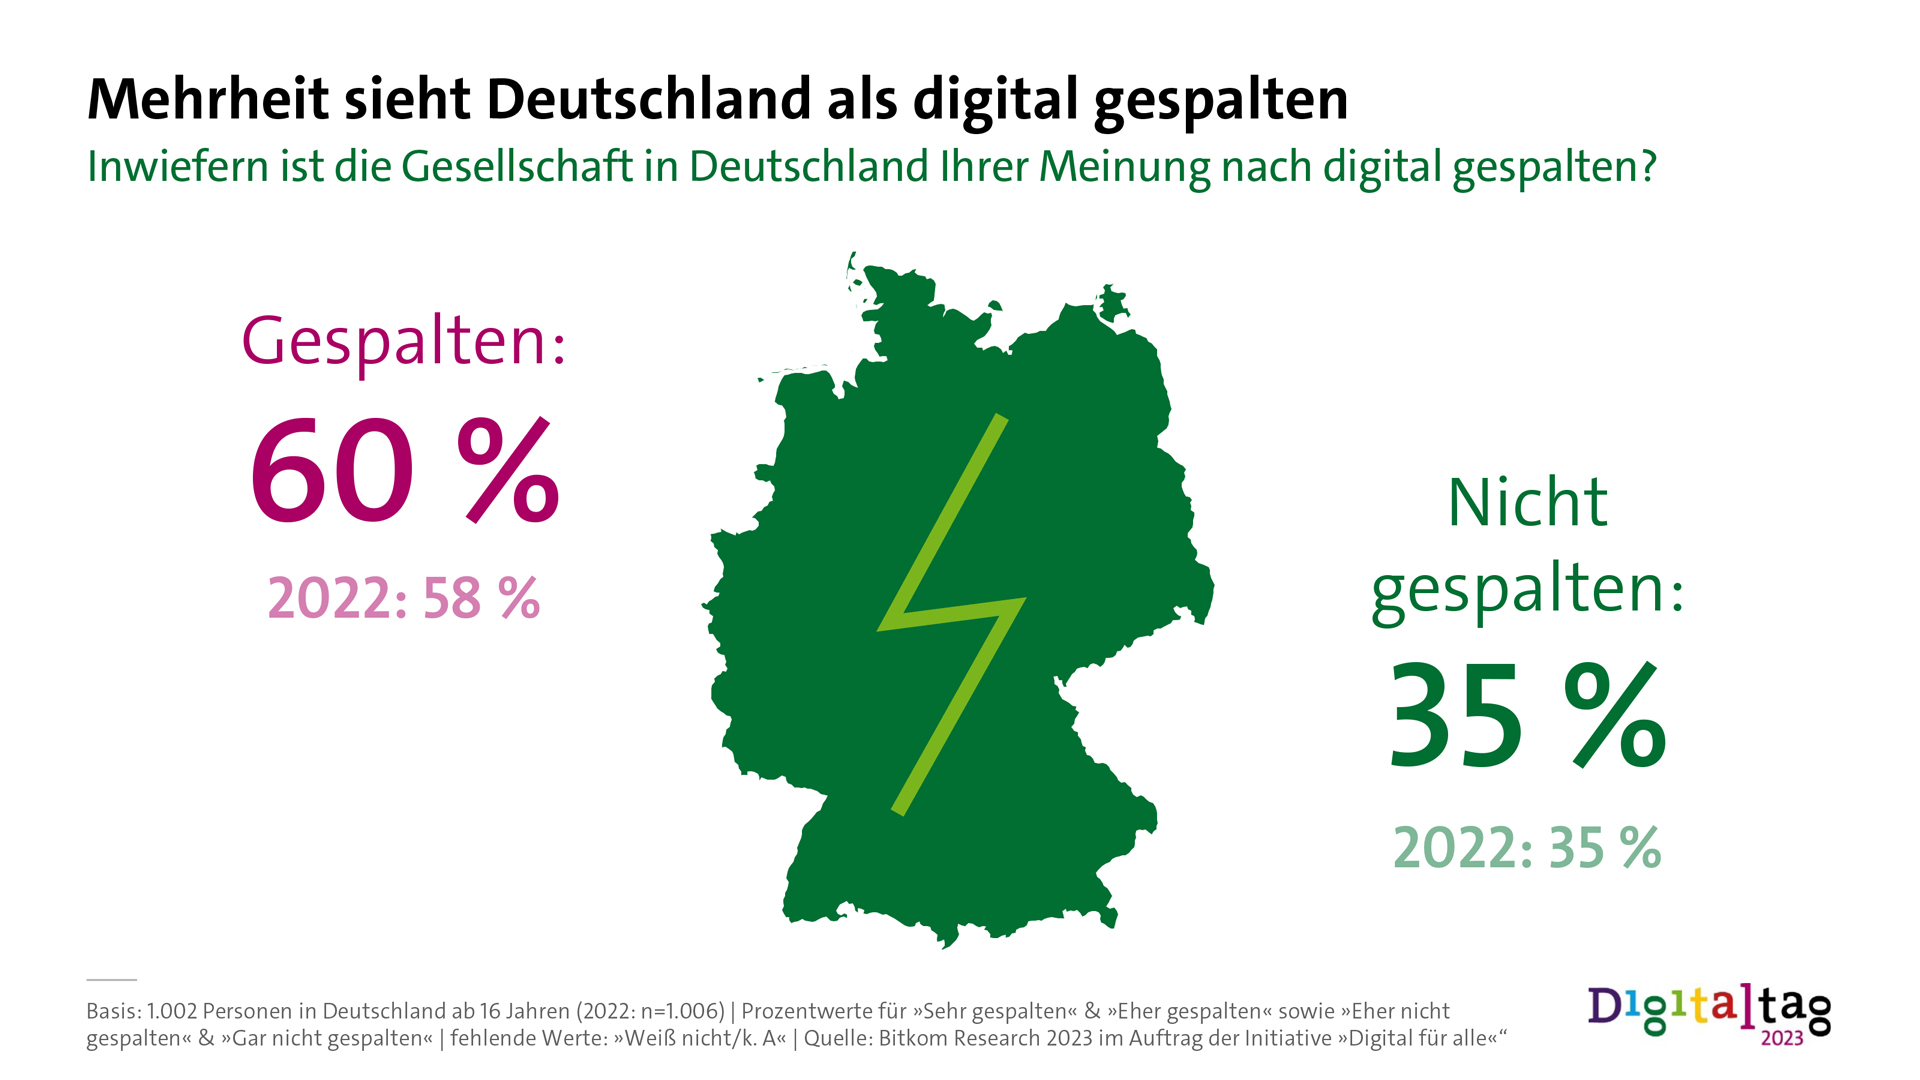 Infografik: Mehrheit sieht Deutschland als digital gespalten. Inwiefern ist die Gesellschaft in Deutschland Ihrer Meinung nach digital gespalten? 60%: Gespalten. 2022: 58%. 35%: Nicht gespalten. 2022: 35%.